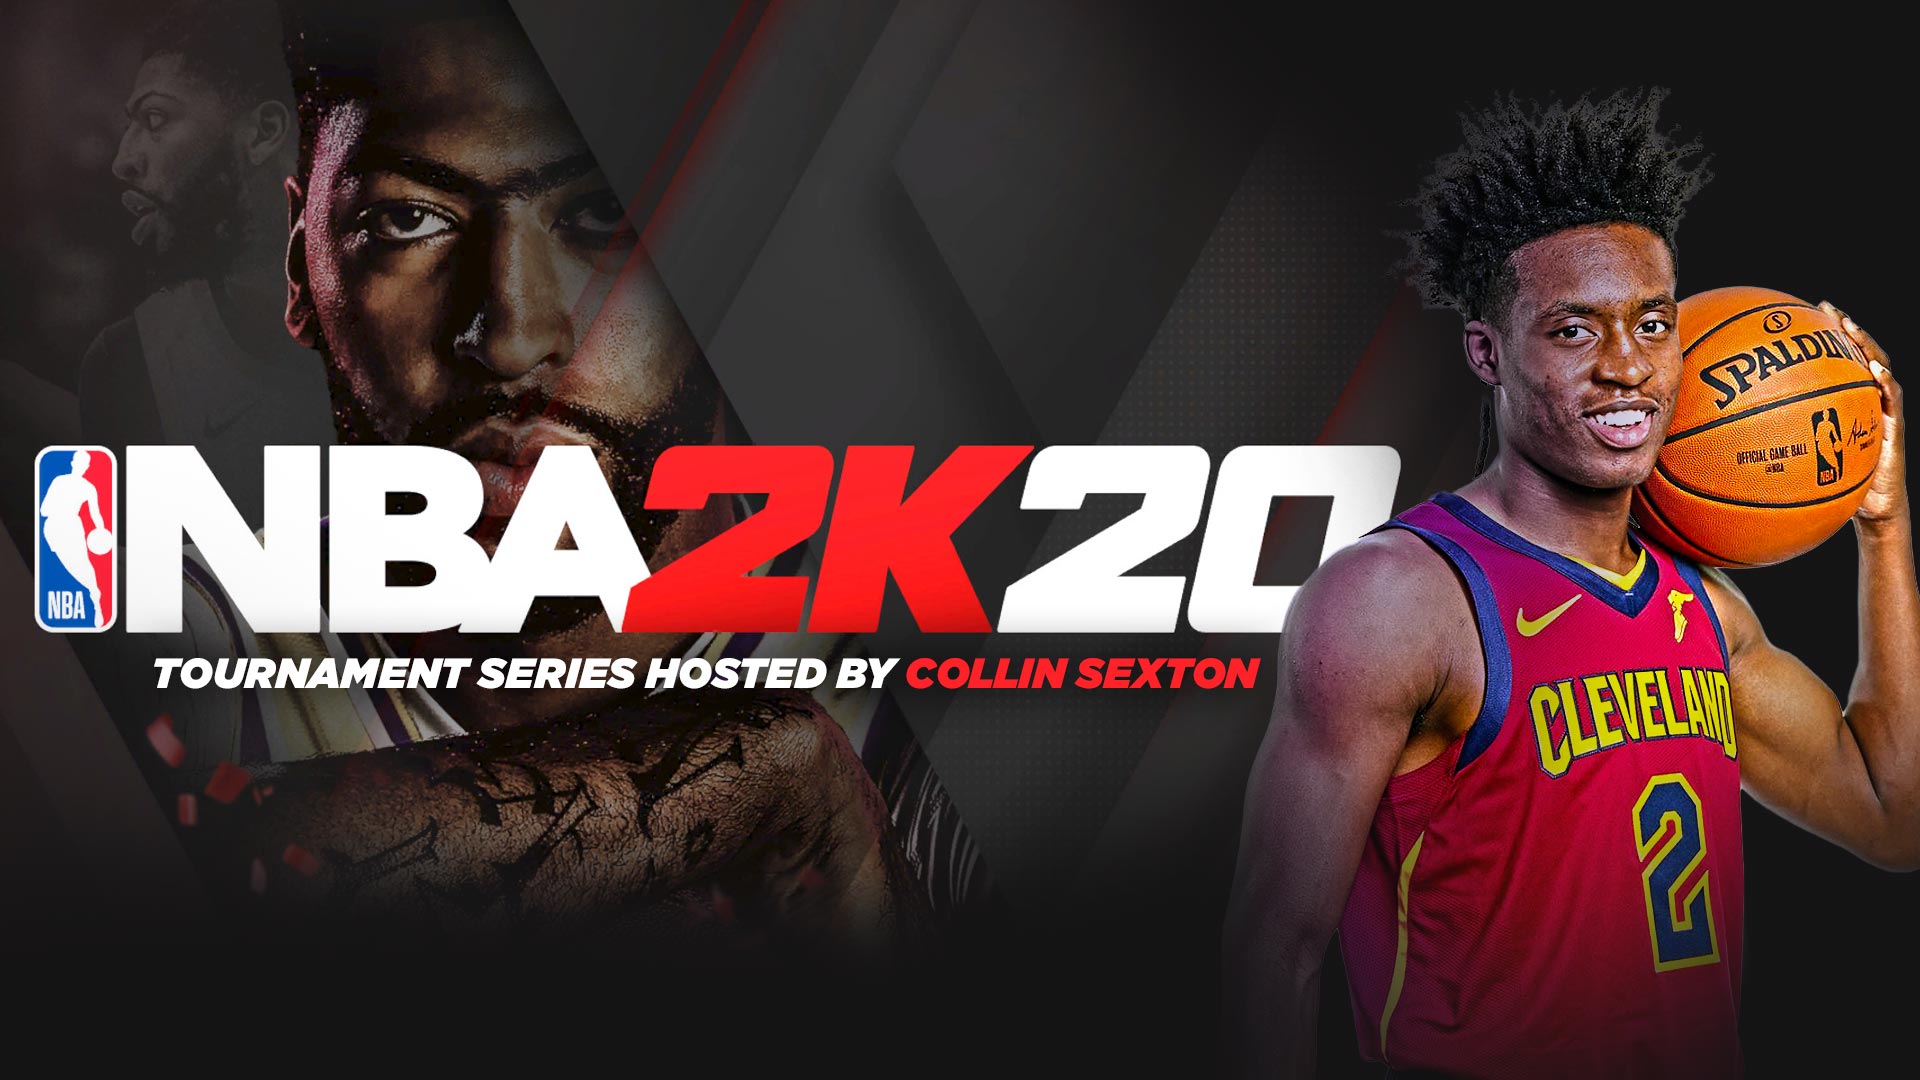 The NBA 2K20 Tournament Series